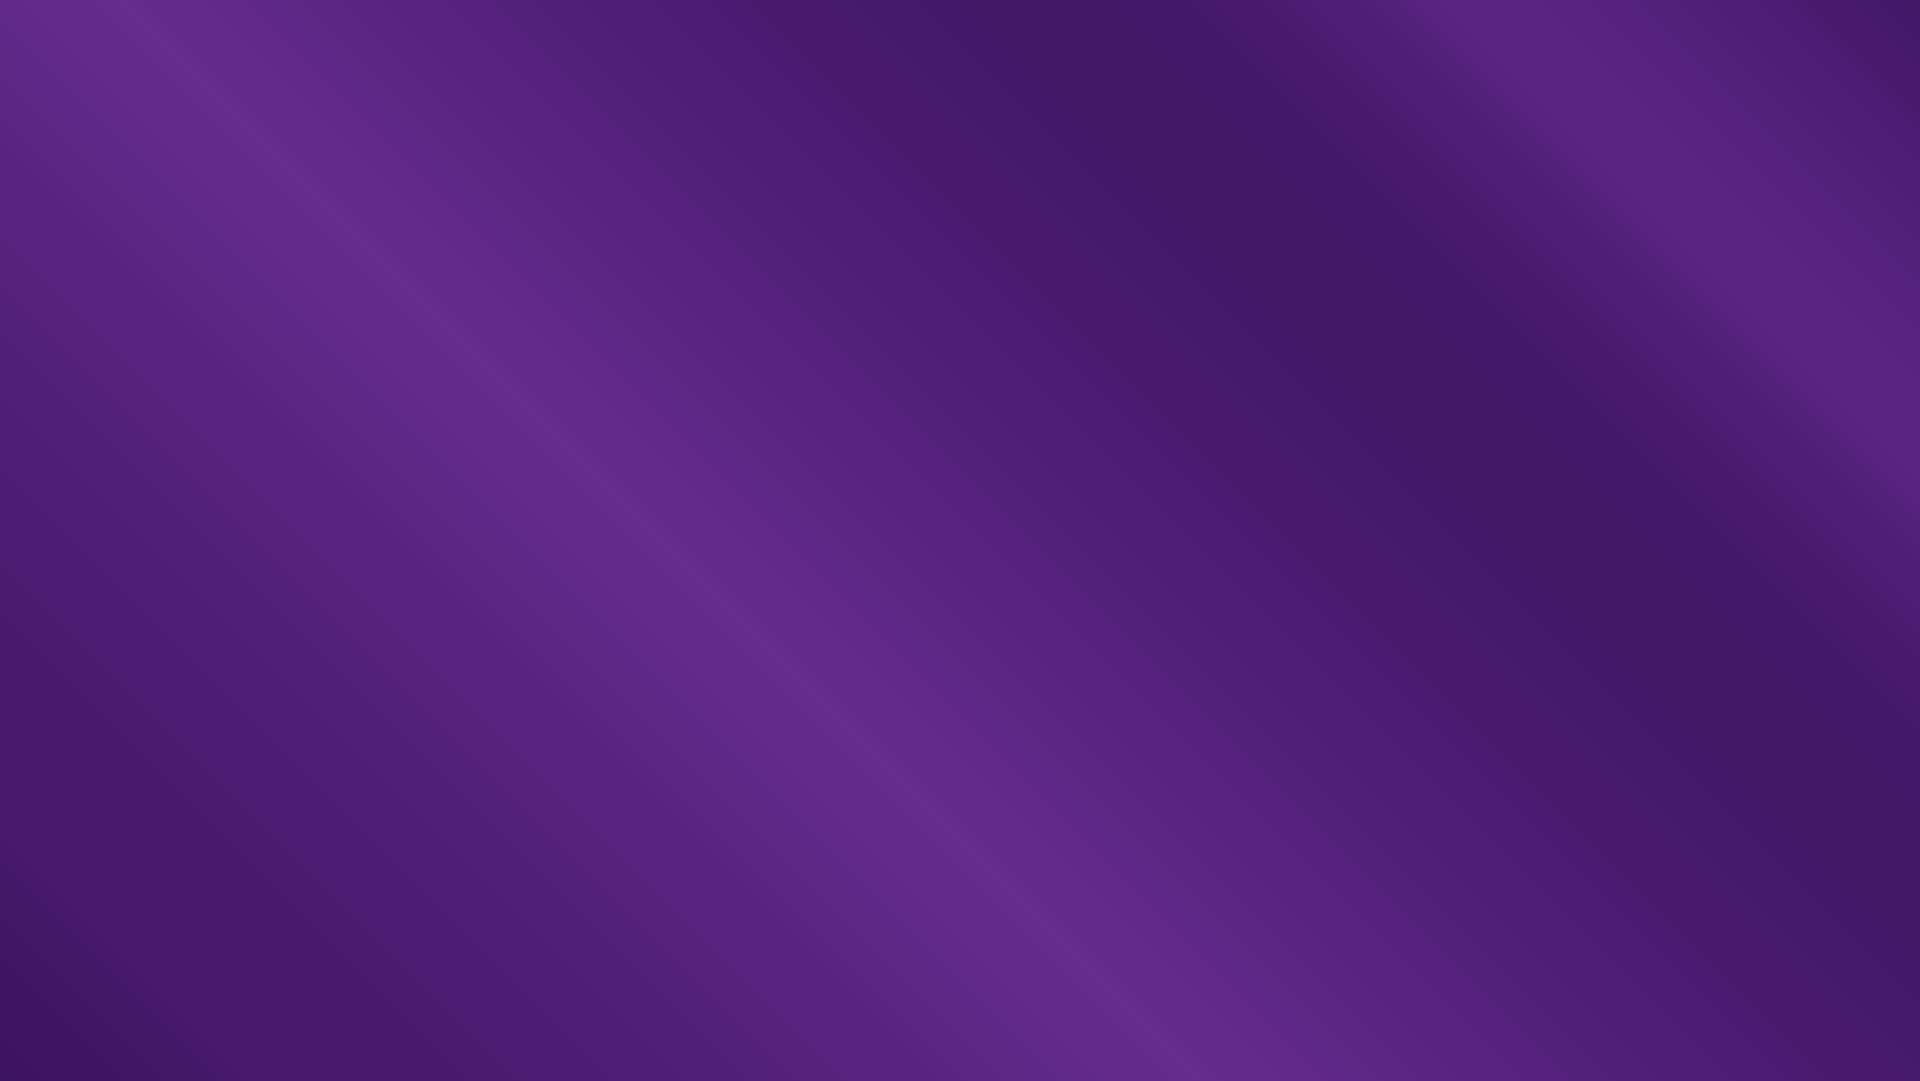 metallic purple background 12348111 Vector Art at Vecteezy